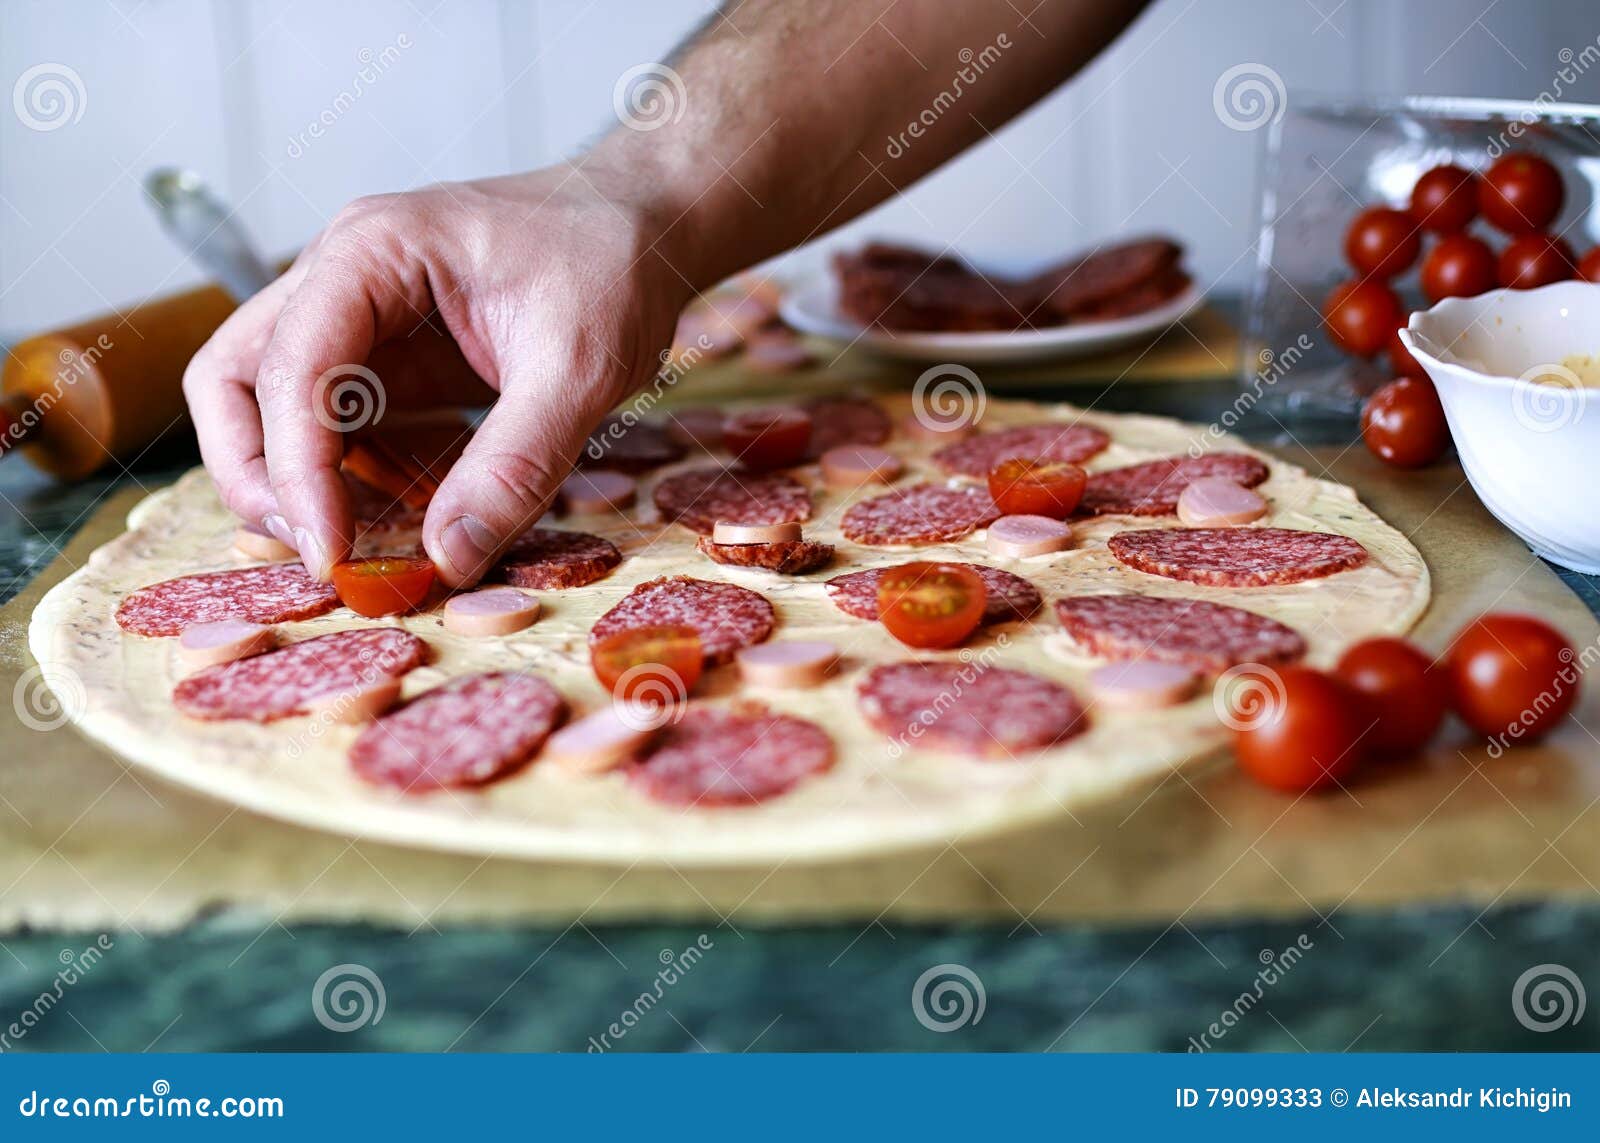 приготовление пиццы начинка с колбасой фото 49